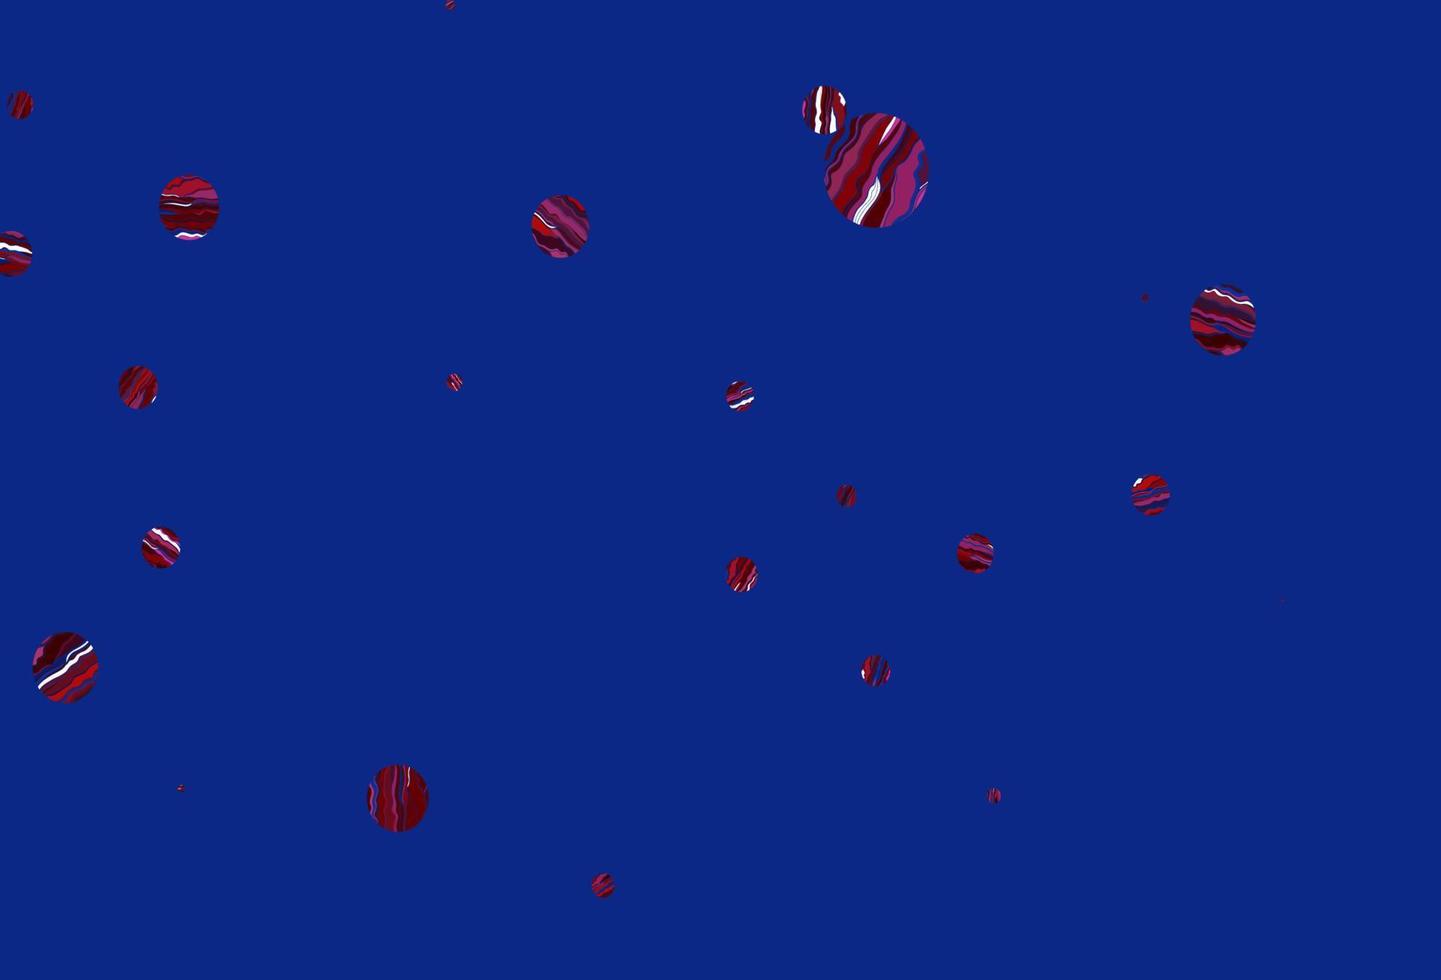 ljusblå, röd vektorbakgrund med bubblor. vektor